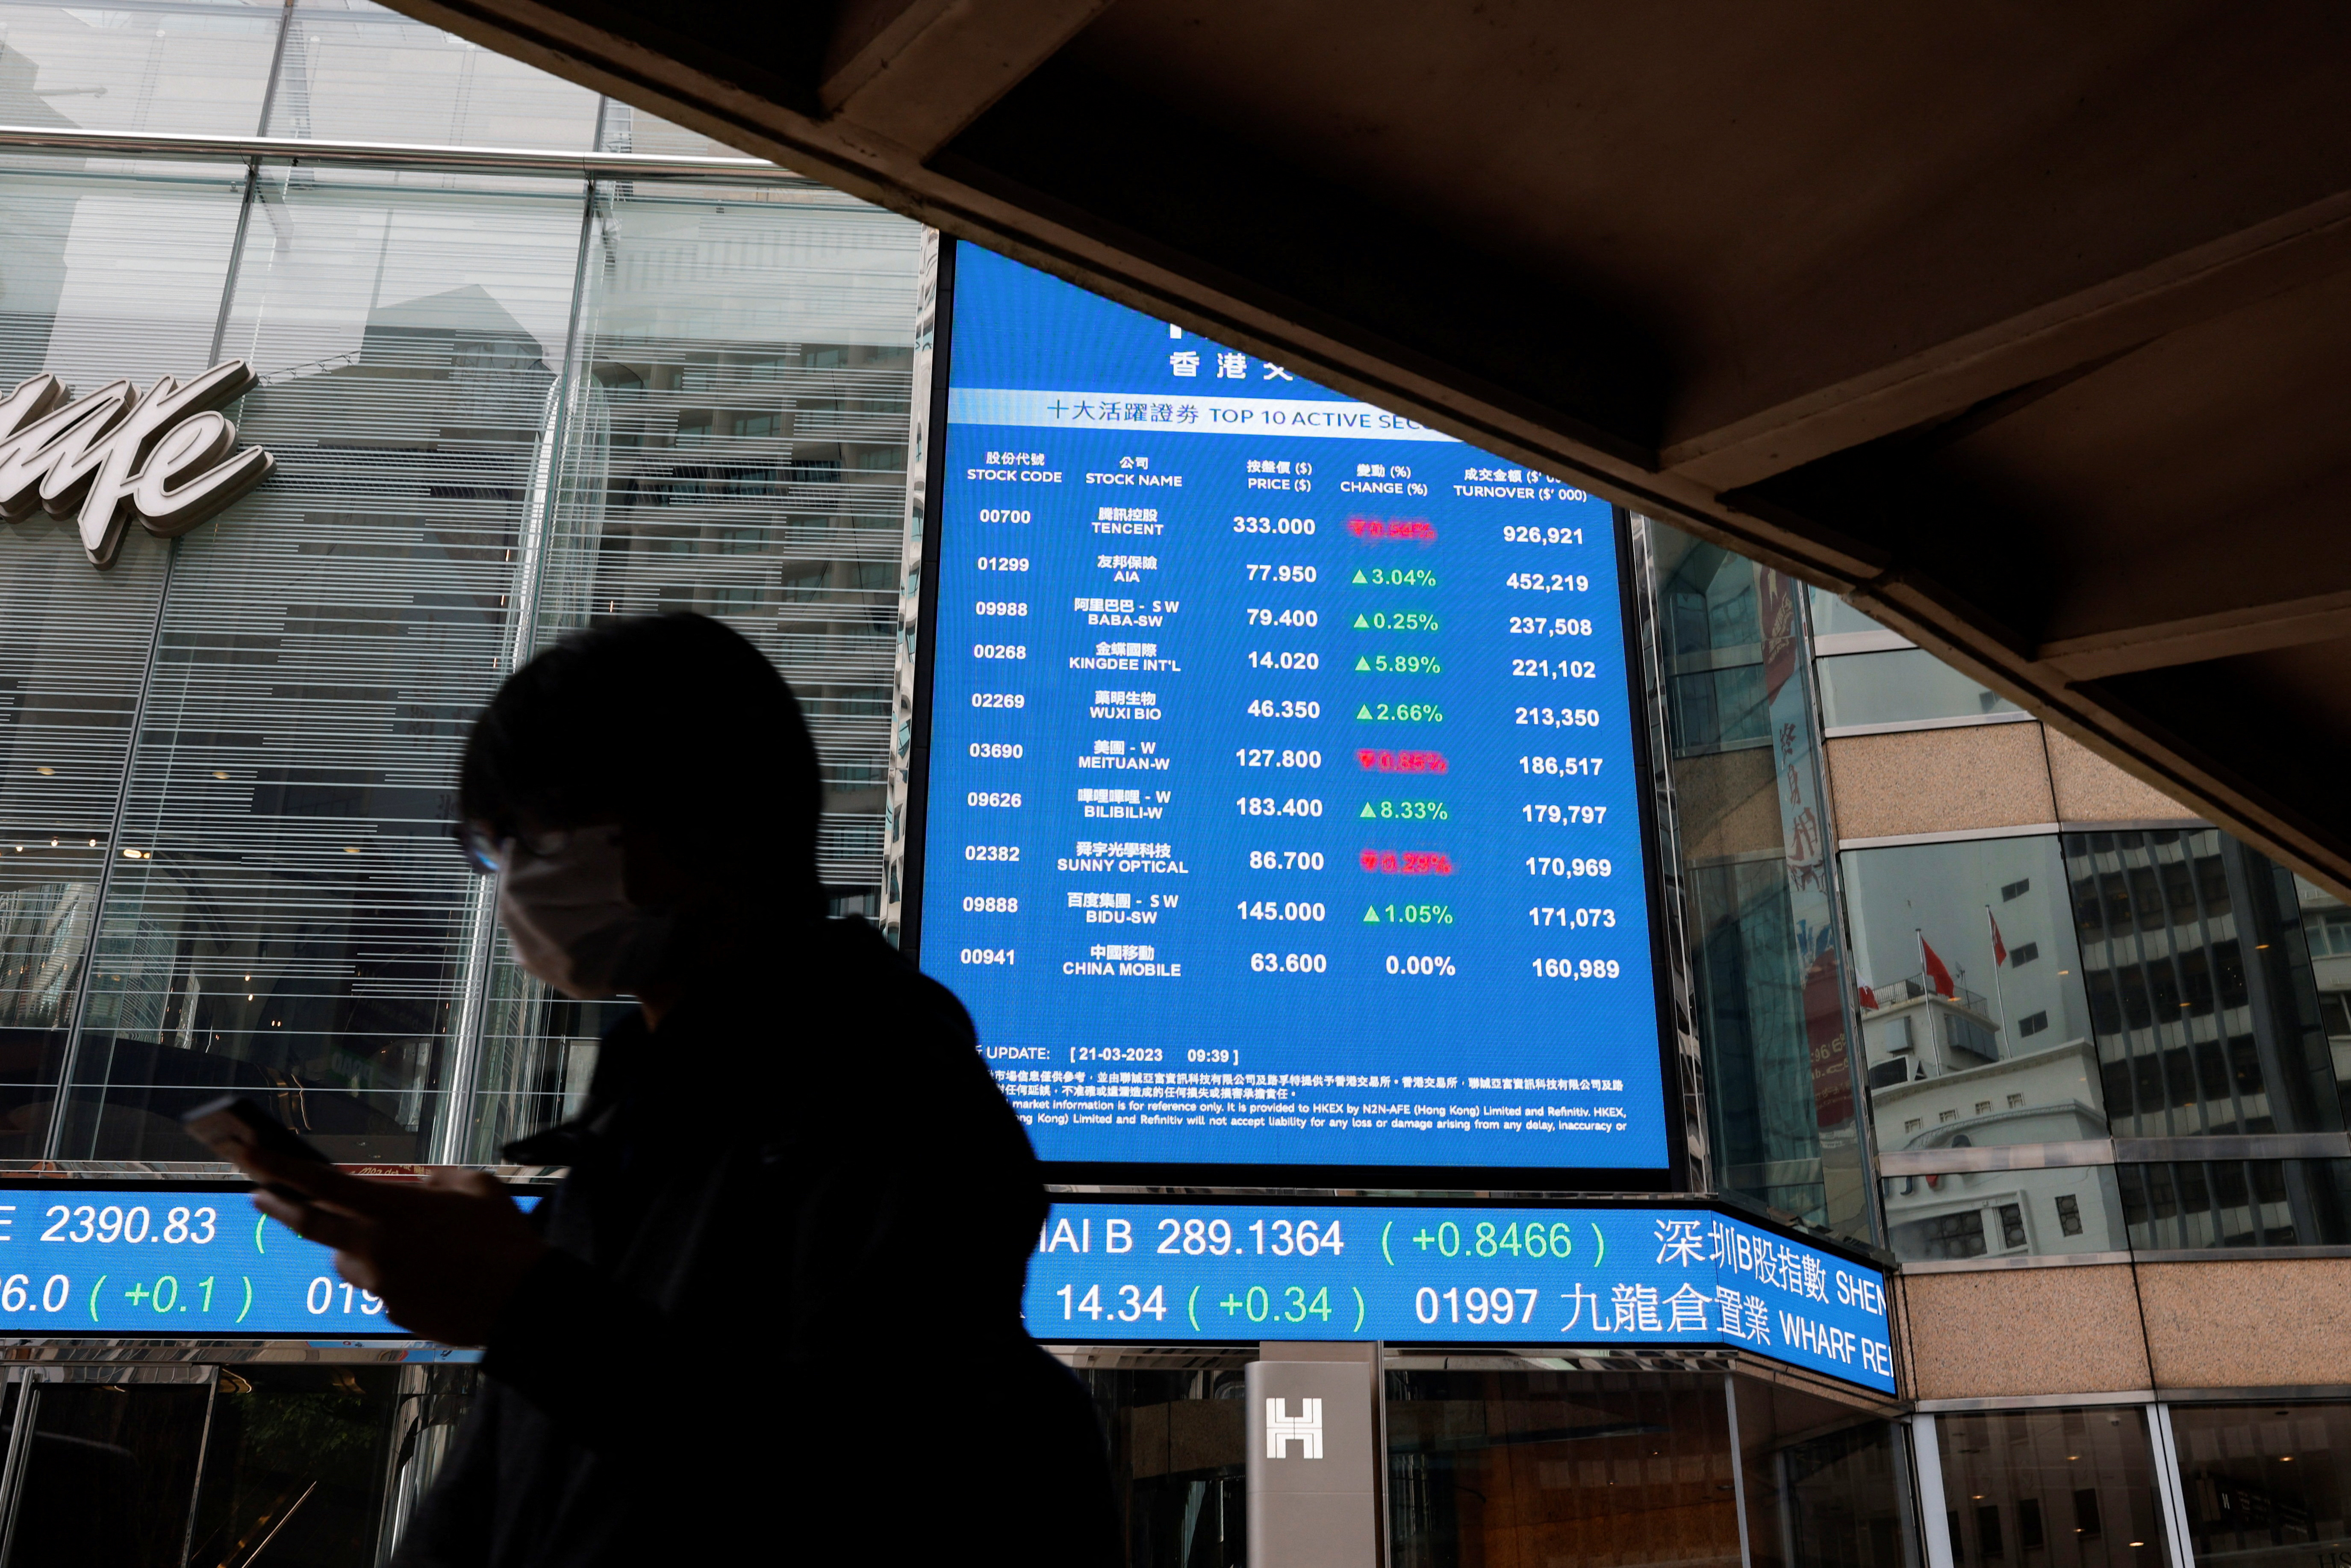 Las bolsas de valores asiáticas se recuperaron tras las turbulencias bancarias en Europa y Estados Unidos. REUTERS/Tyrone Siu